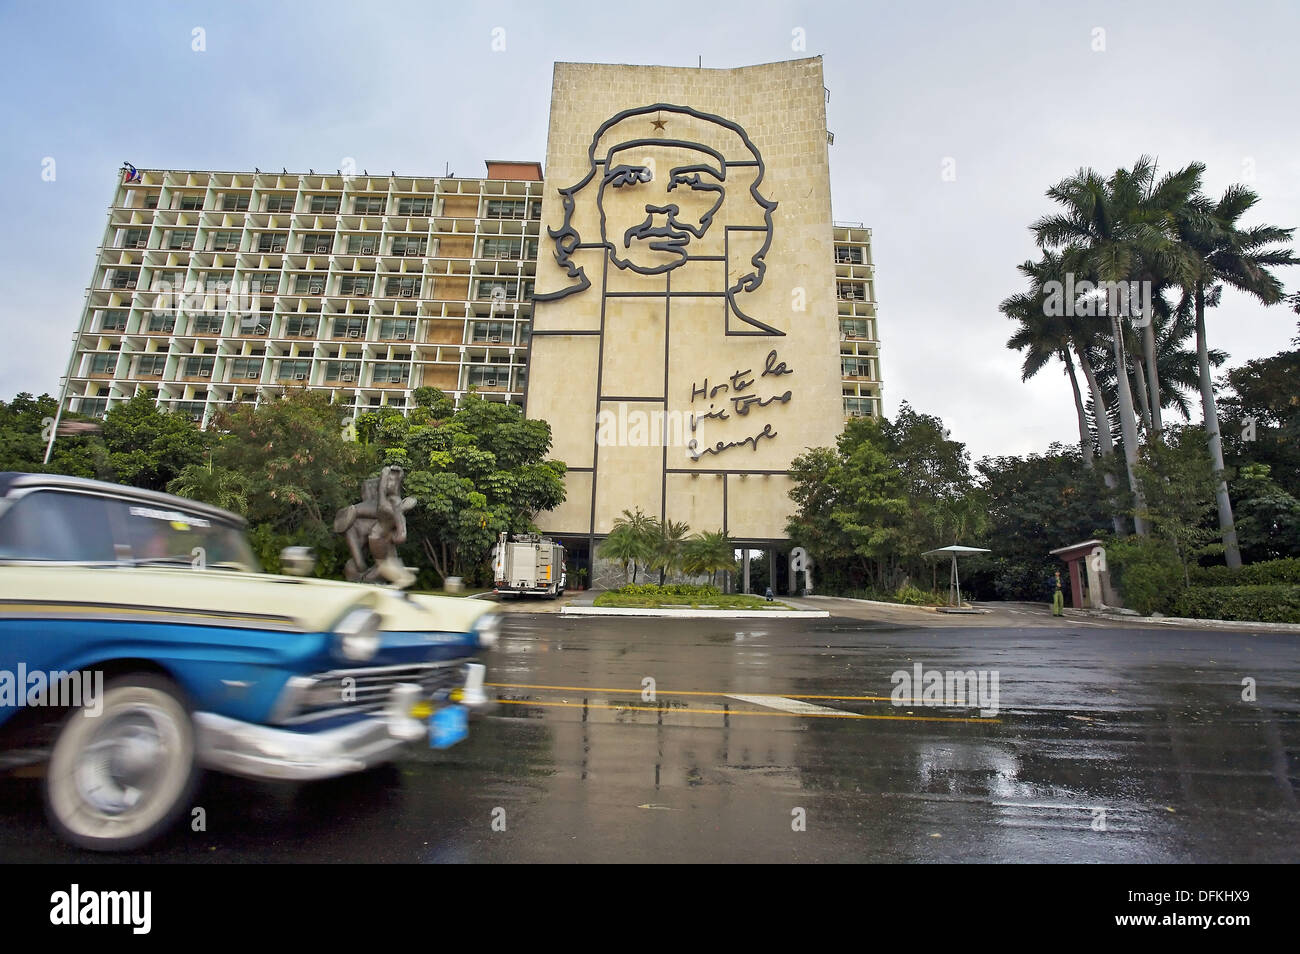 Monumento a Ernesto Che Guevara (1928 - 67) en la Plaza de Revolución. La Habana. Cuba Foto de stock